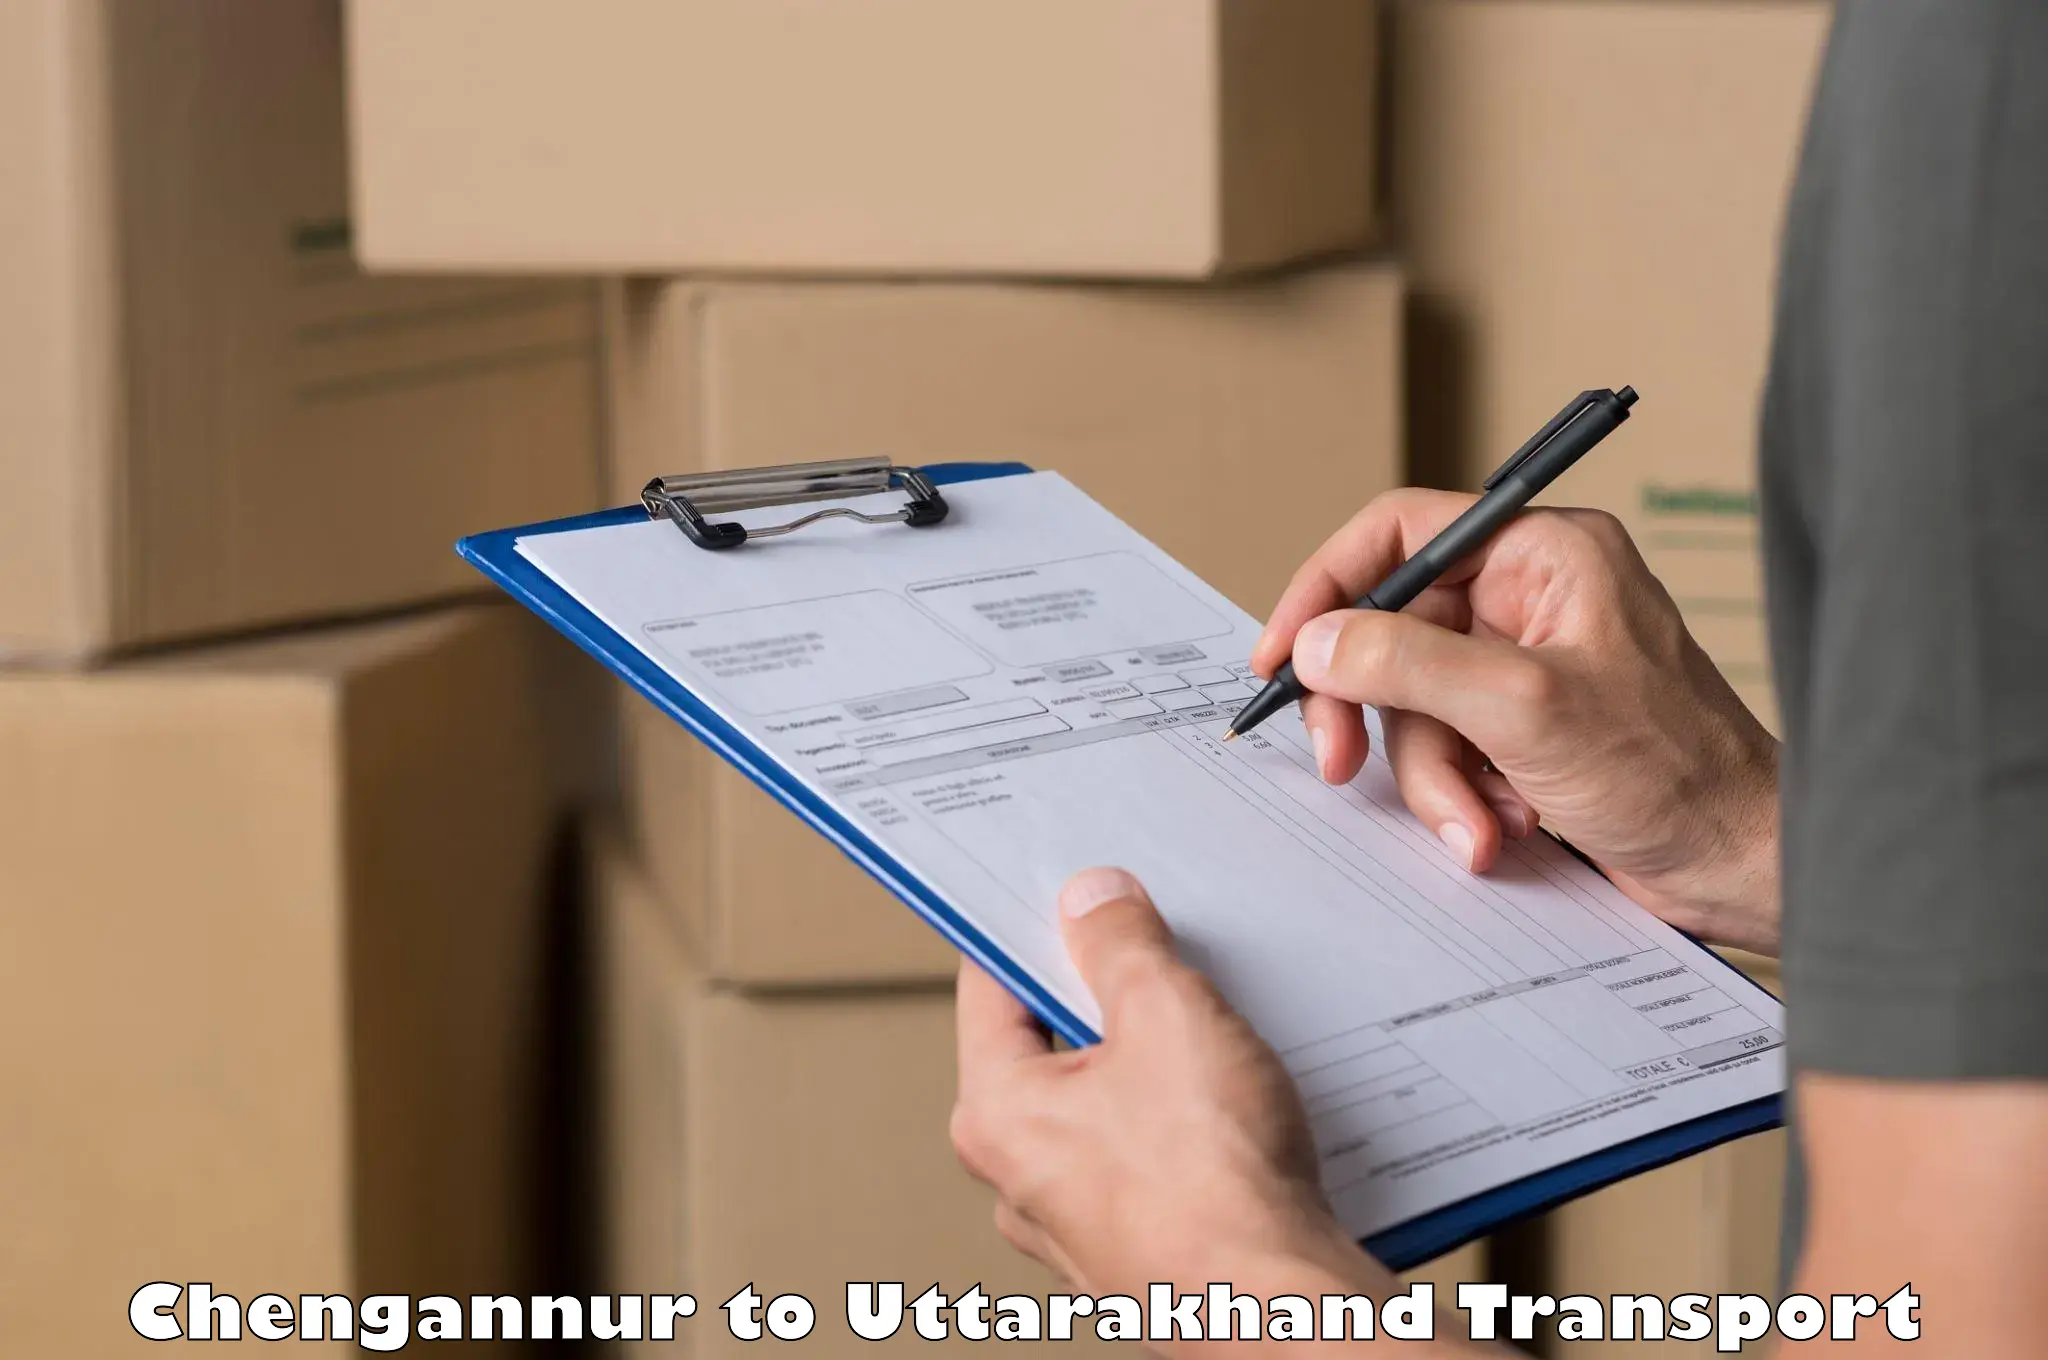 Truck transport companies in India Chengannur to Rishikesh